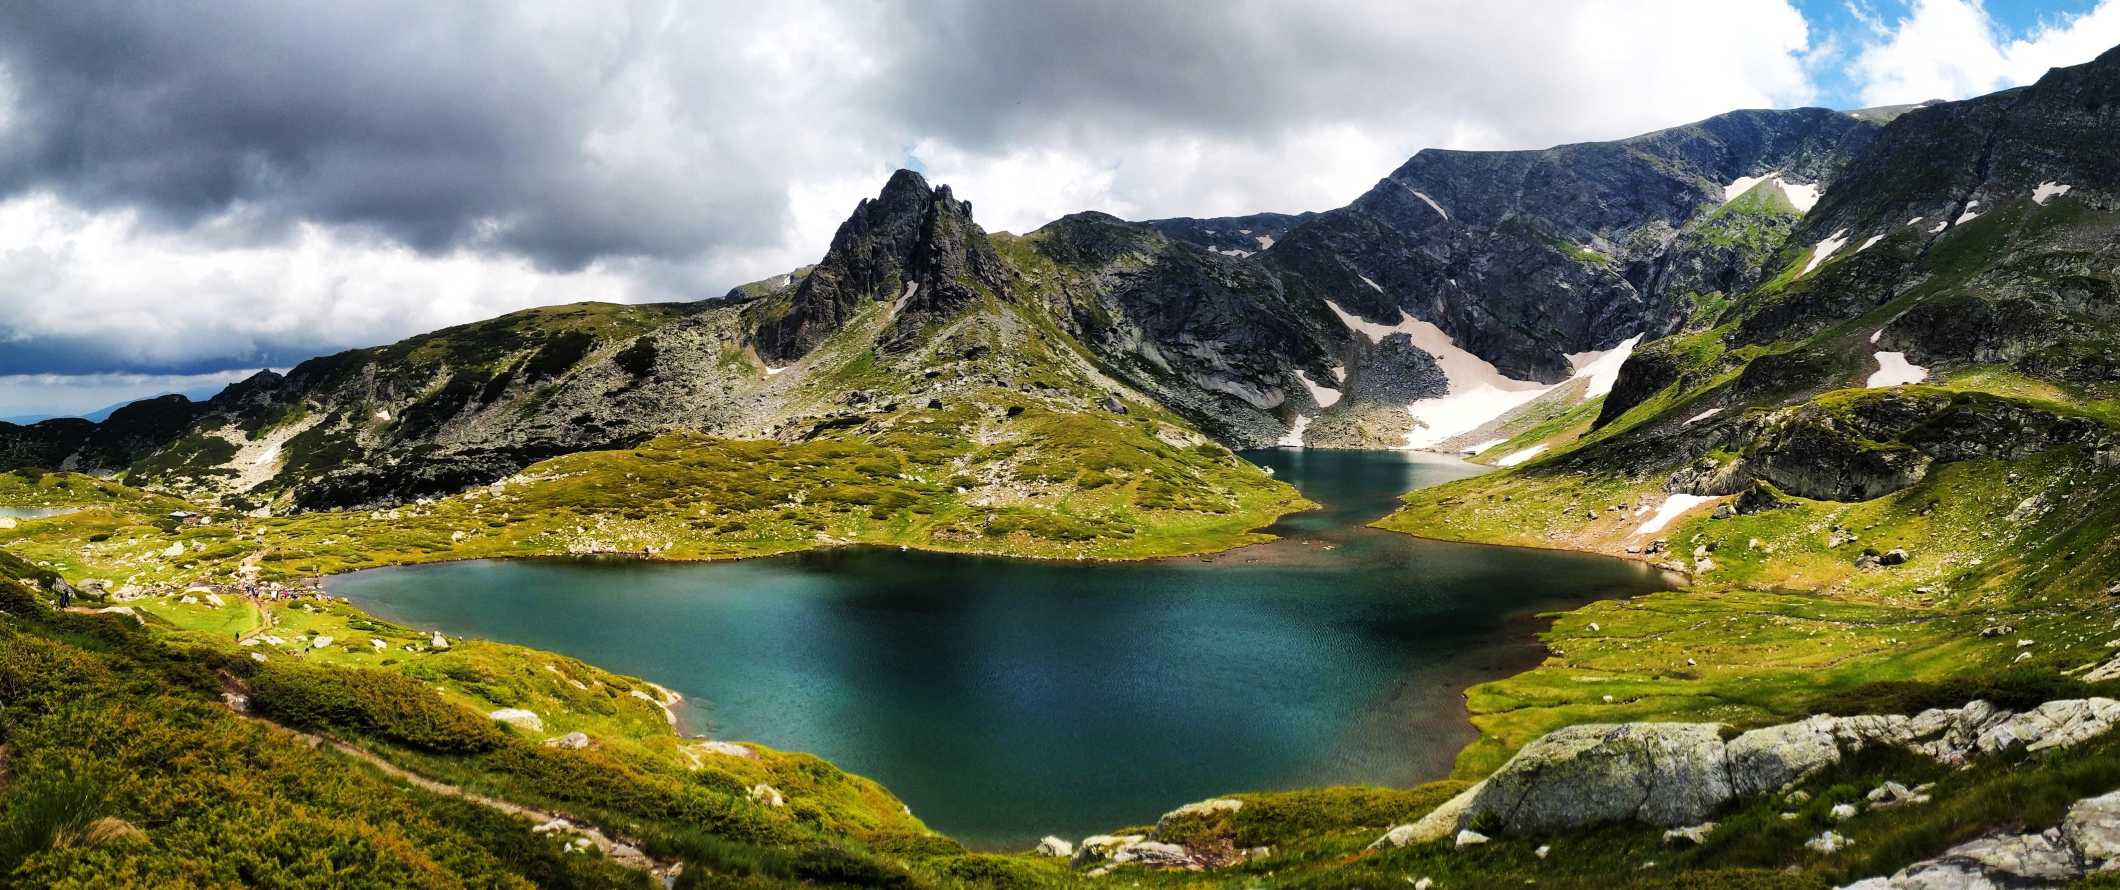 Lago verde esmeralda com picos pontiagudos ao fundo nas montanhas de Rila, Bulgária